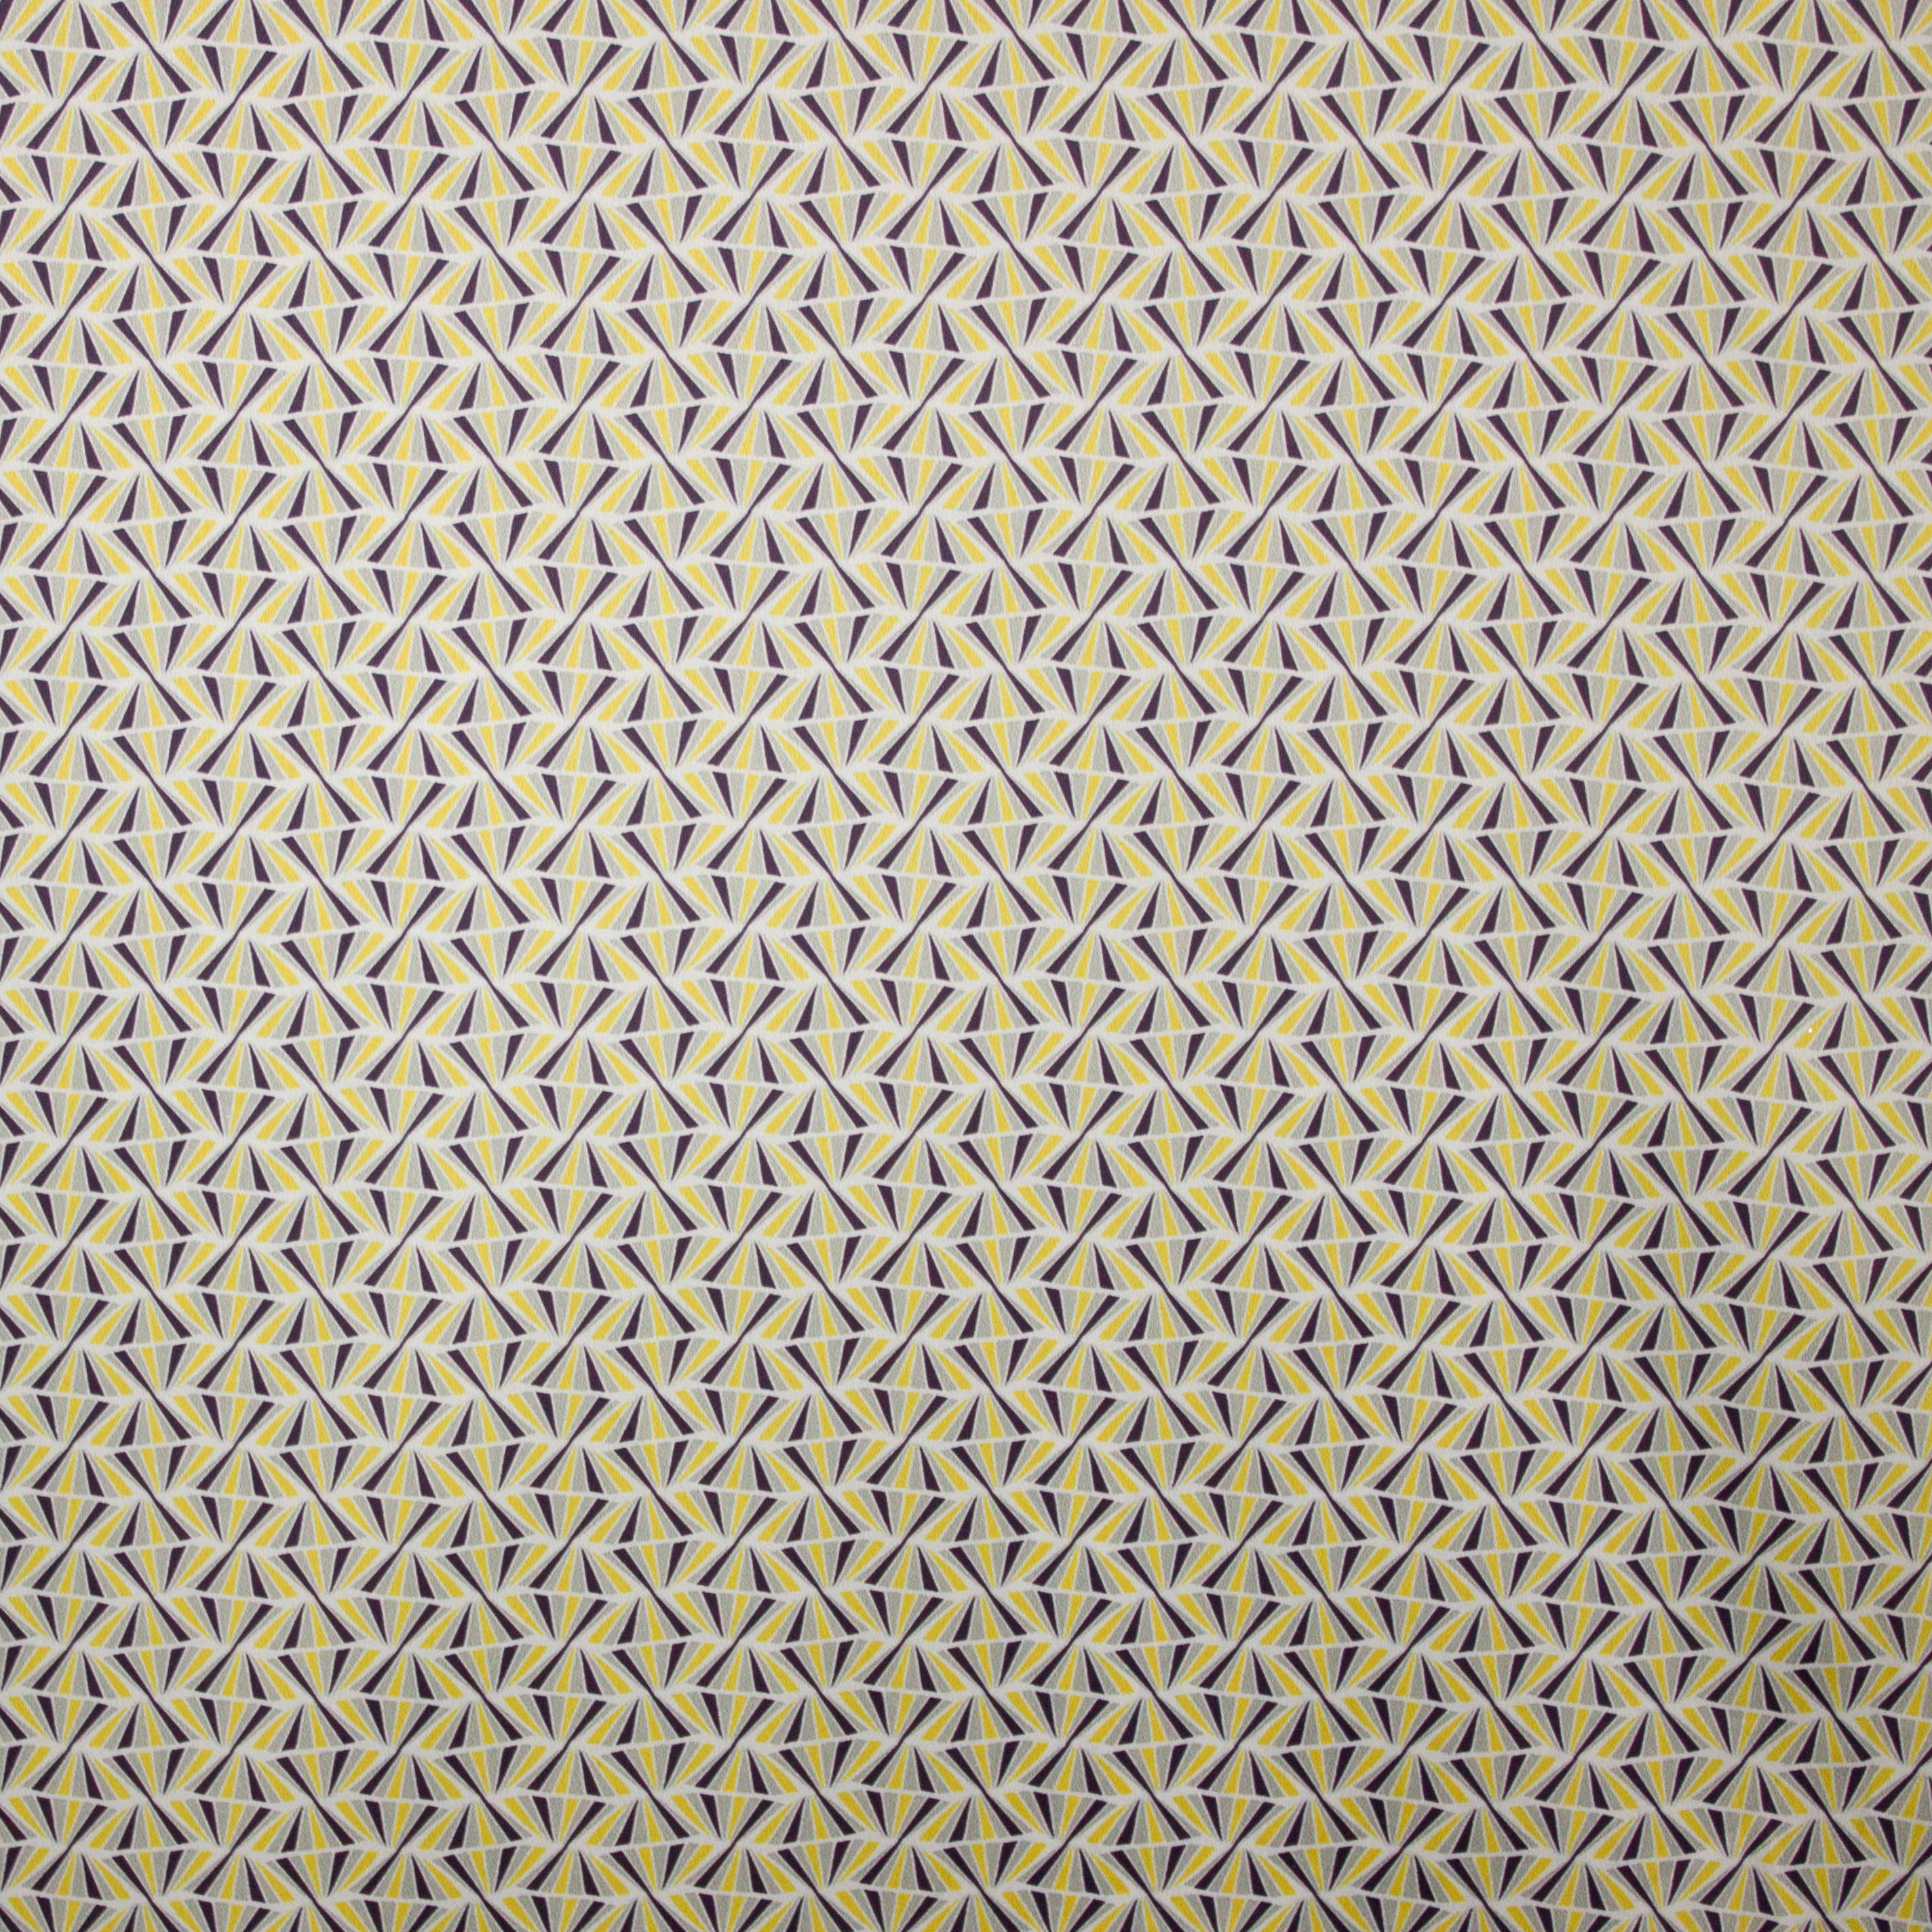 Polyester stof met abstract motief in grijs, wit en geel